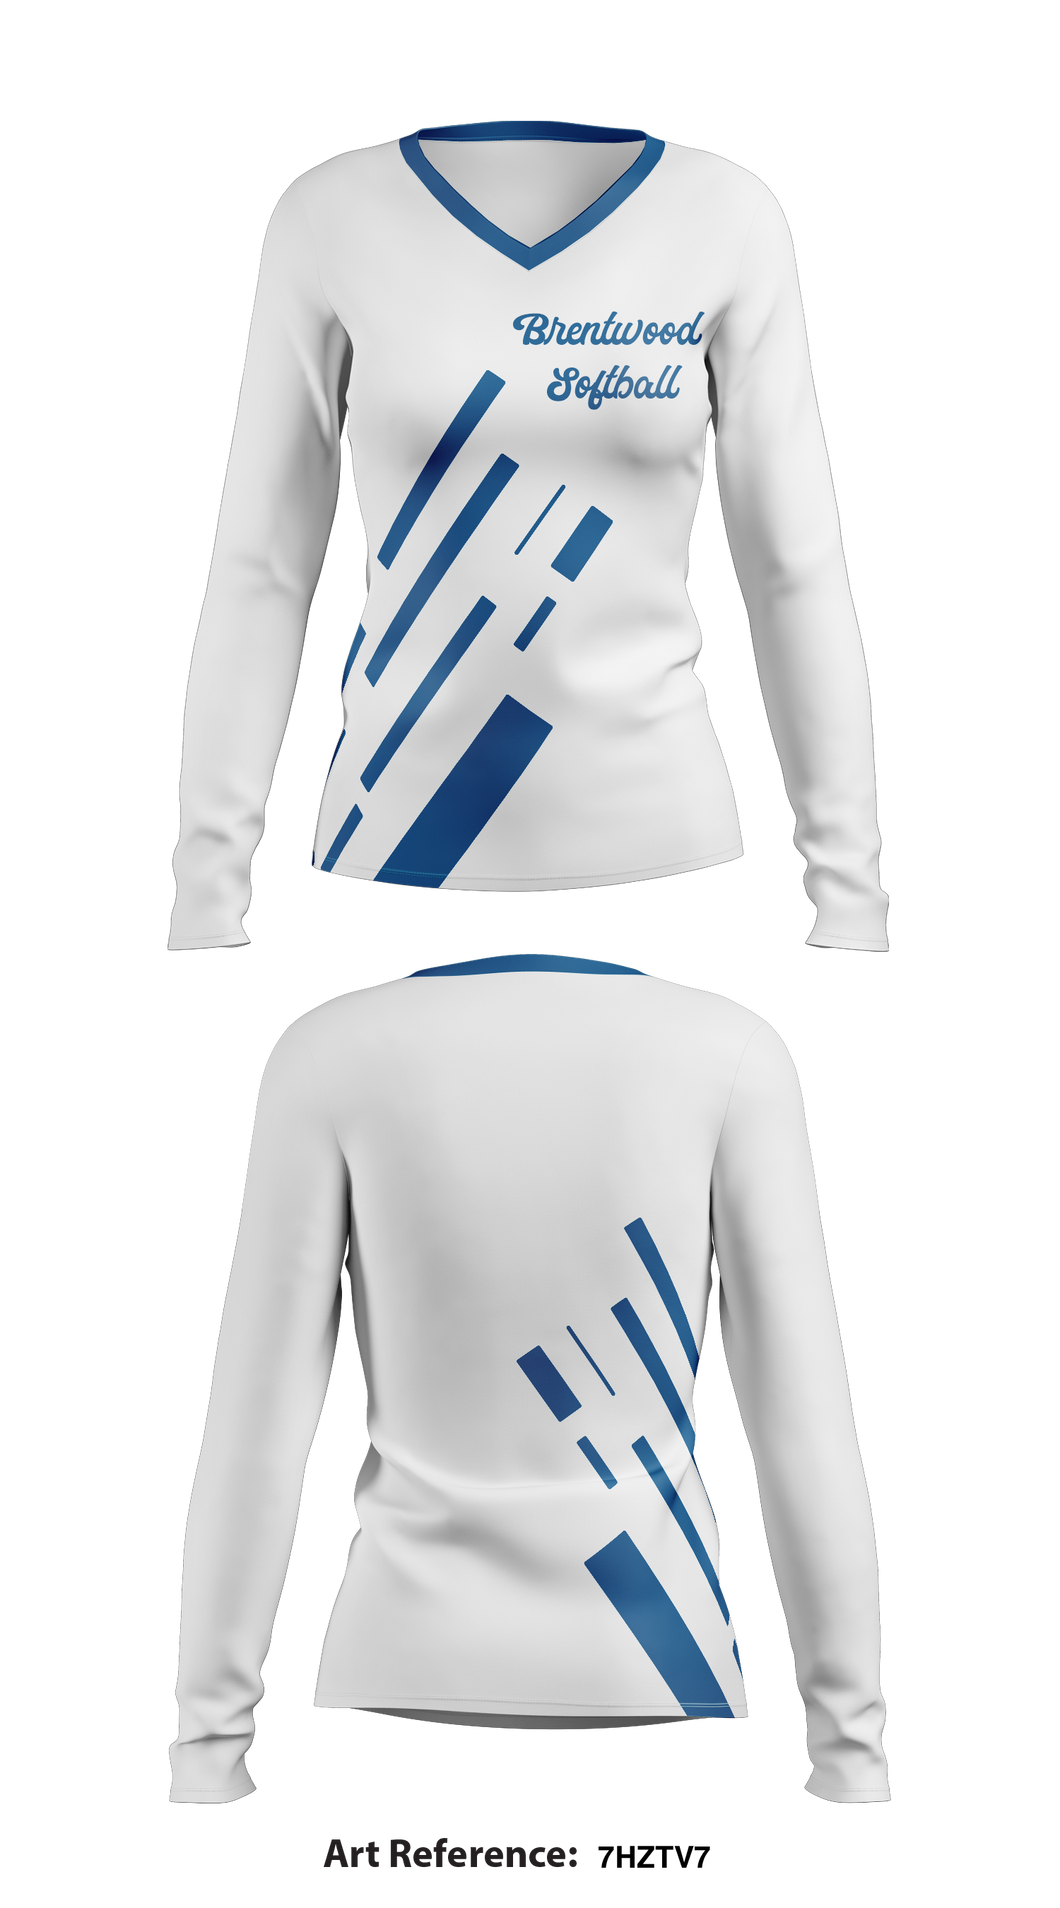 Brentwood softball 9844363 Women's Long Sleeve V-neck Shirt - 1